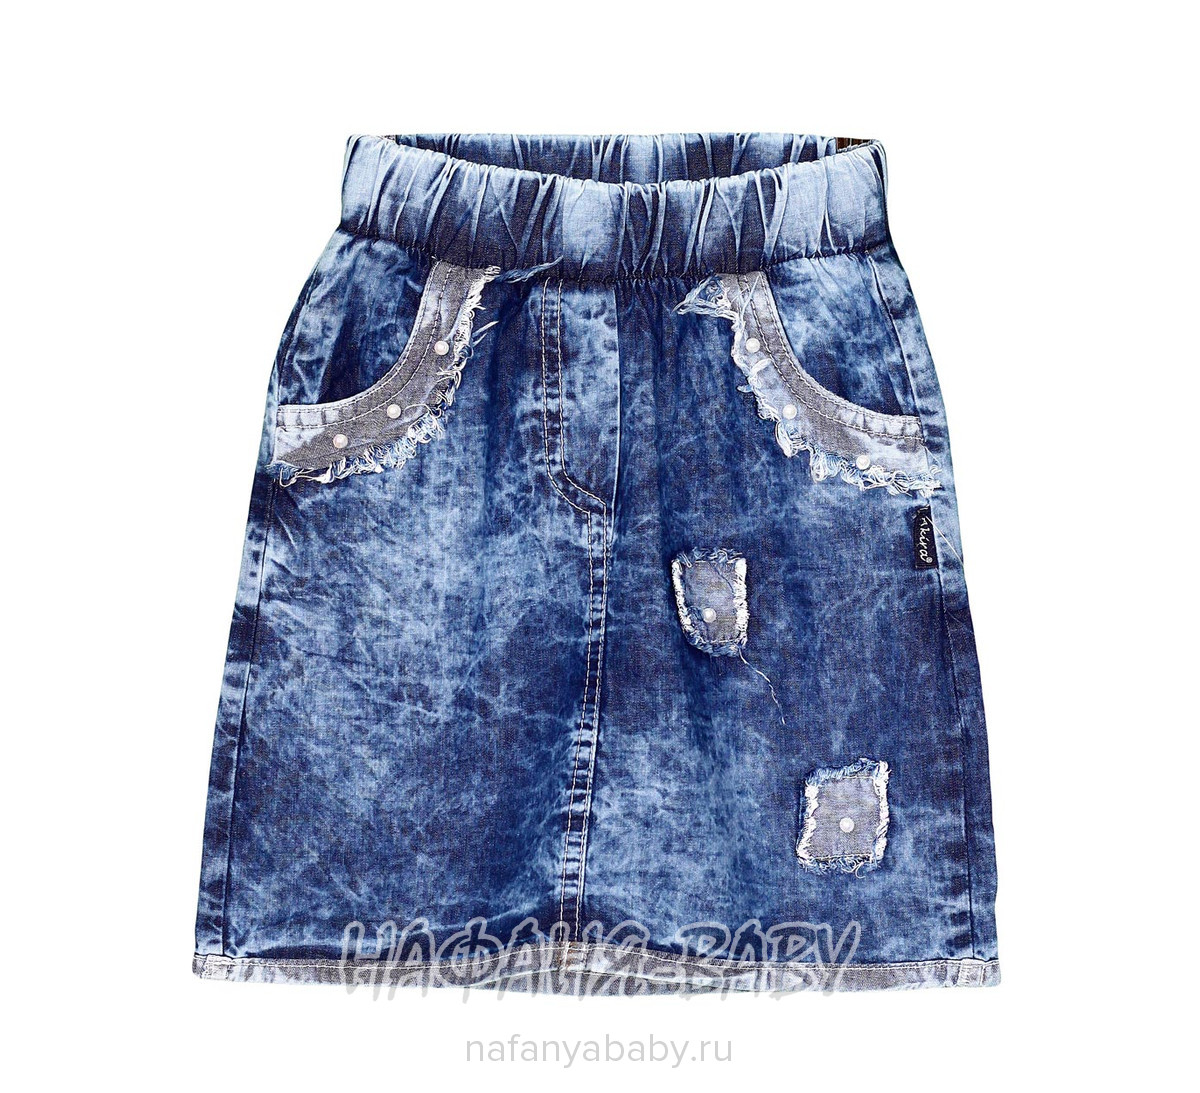 Детская джинсовая юбка AKIRA, купить в интернет магазине Нафаня. арт: 2653.